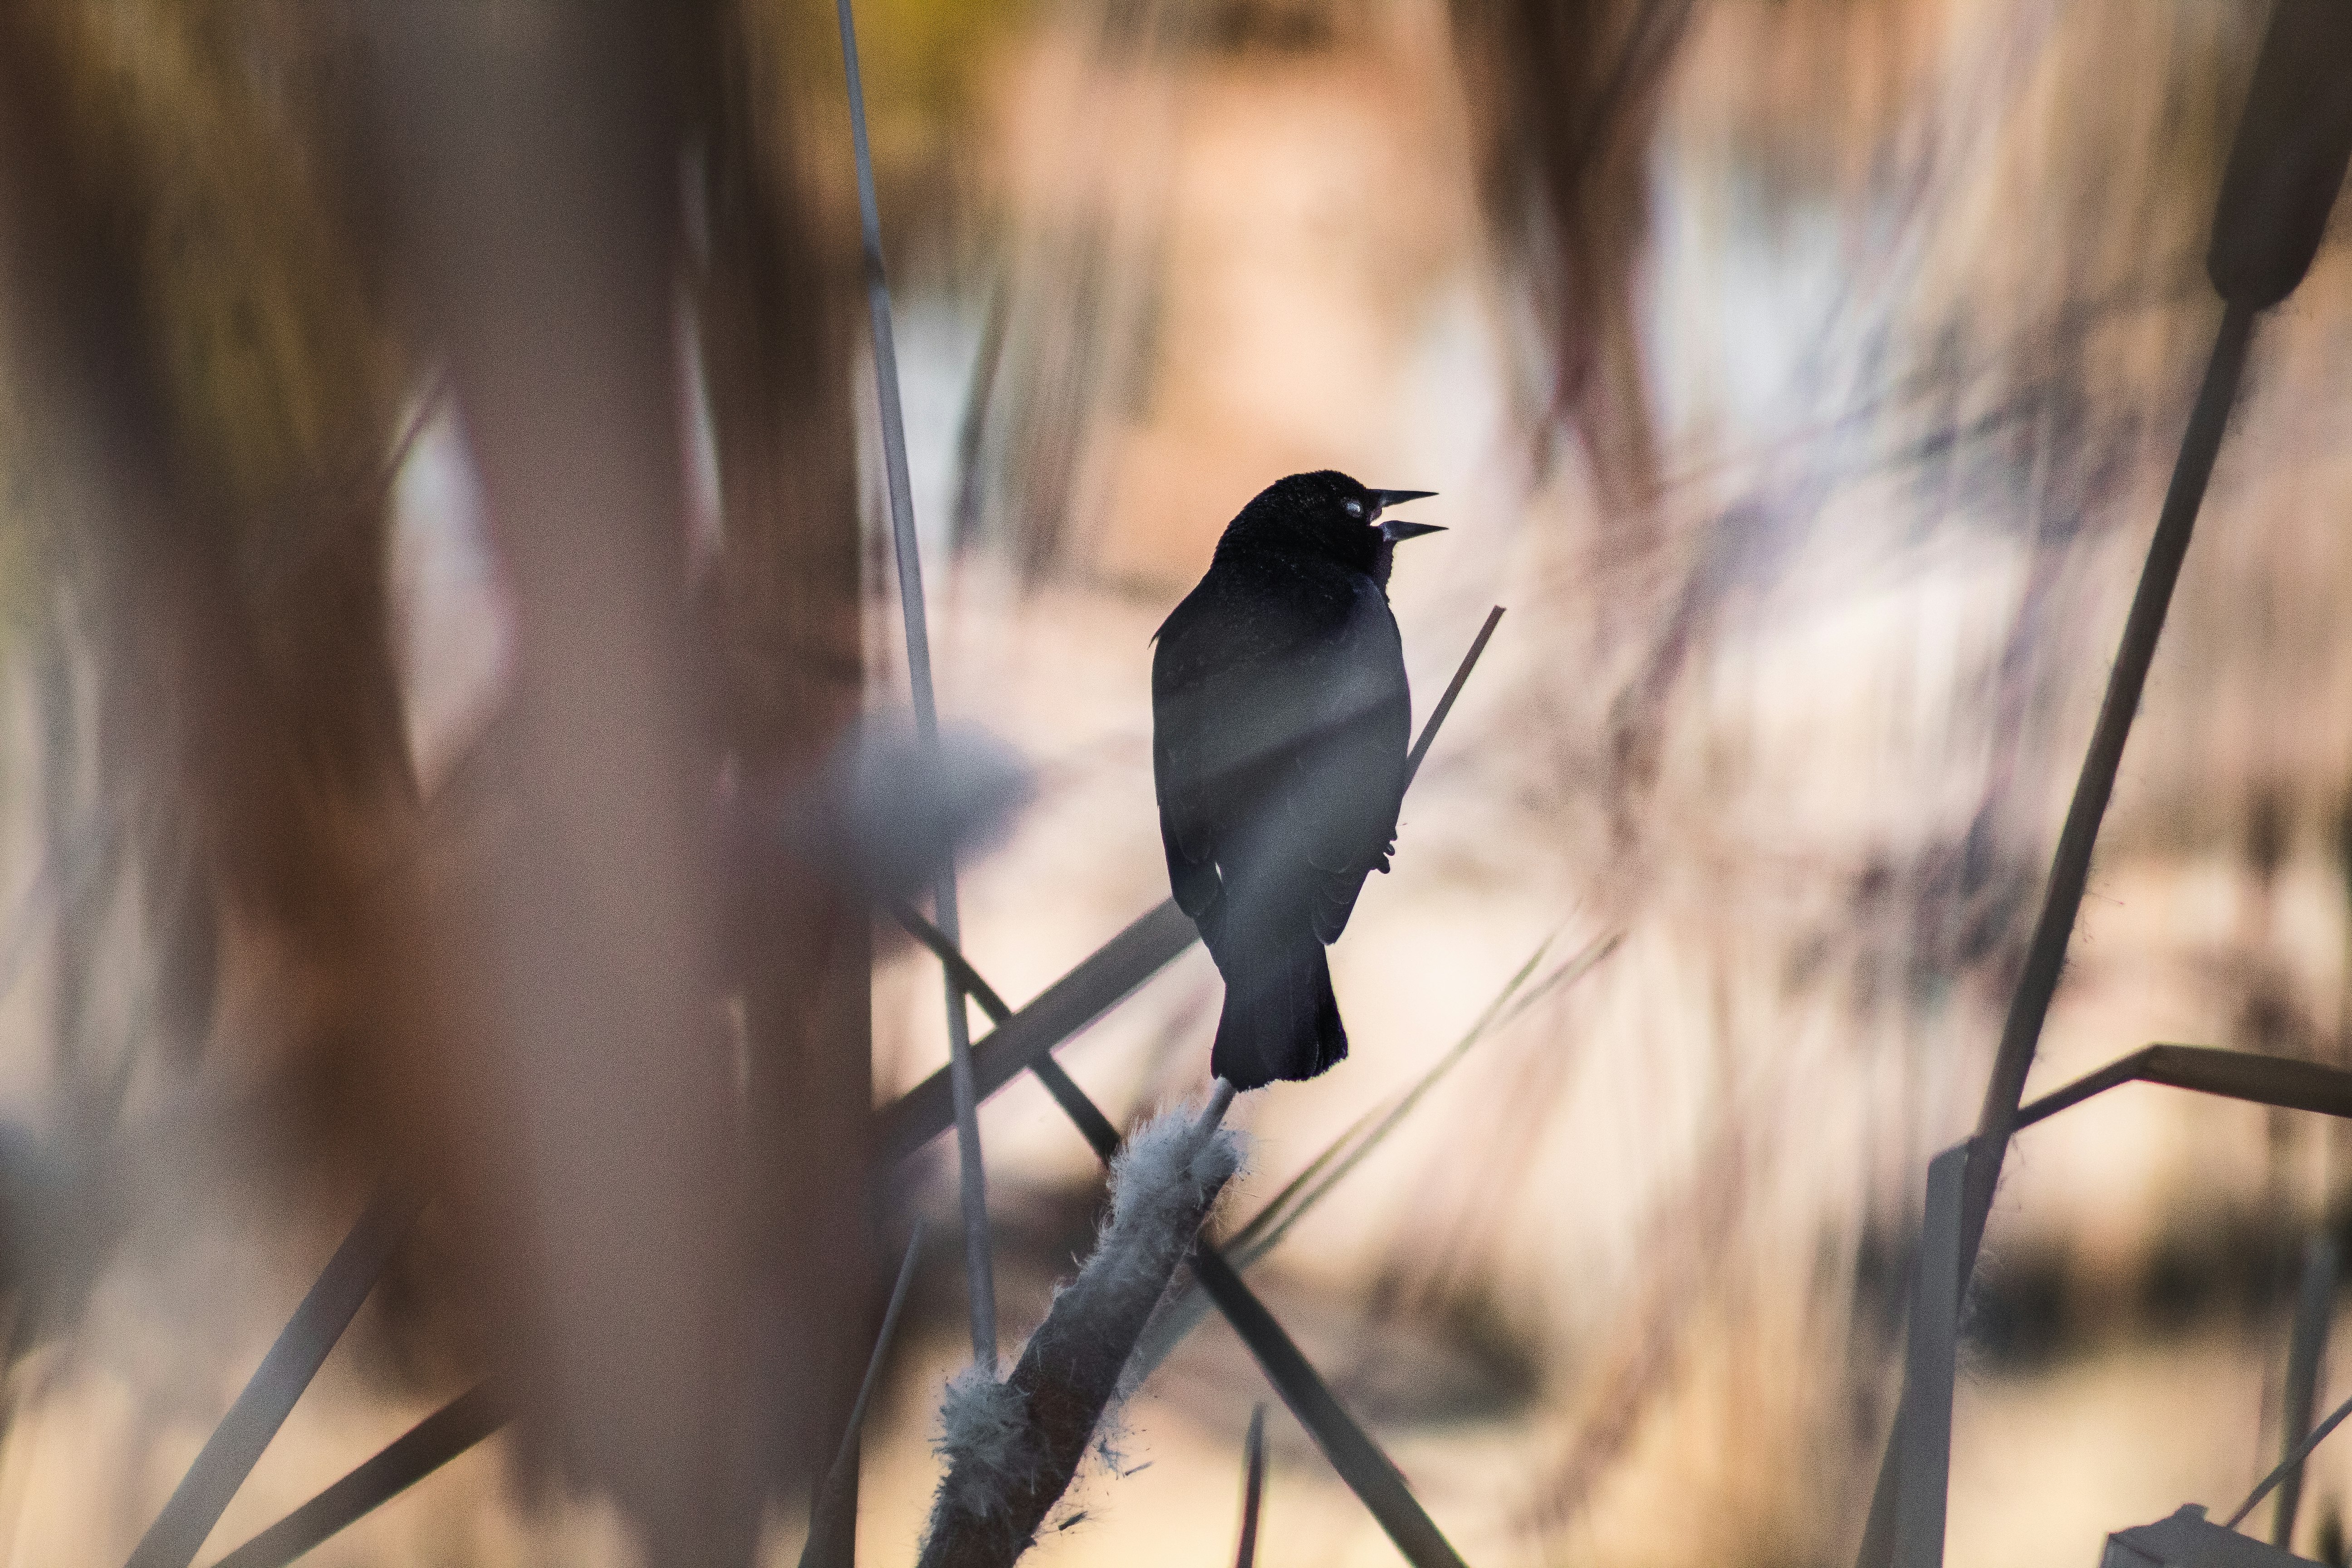 black bird on brown wooden stick during daytime